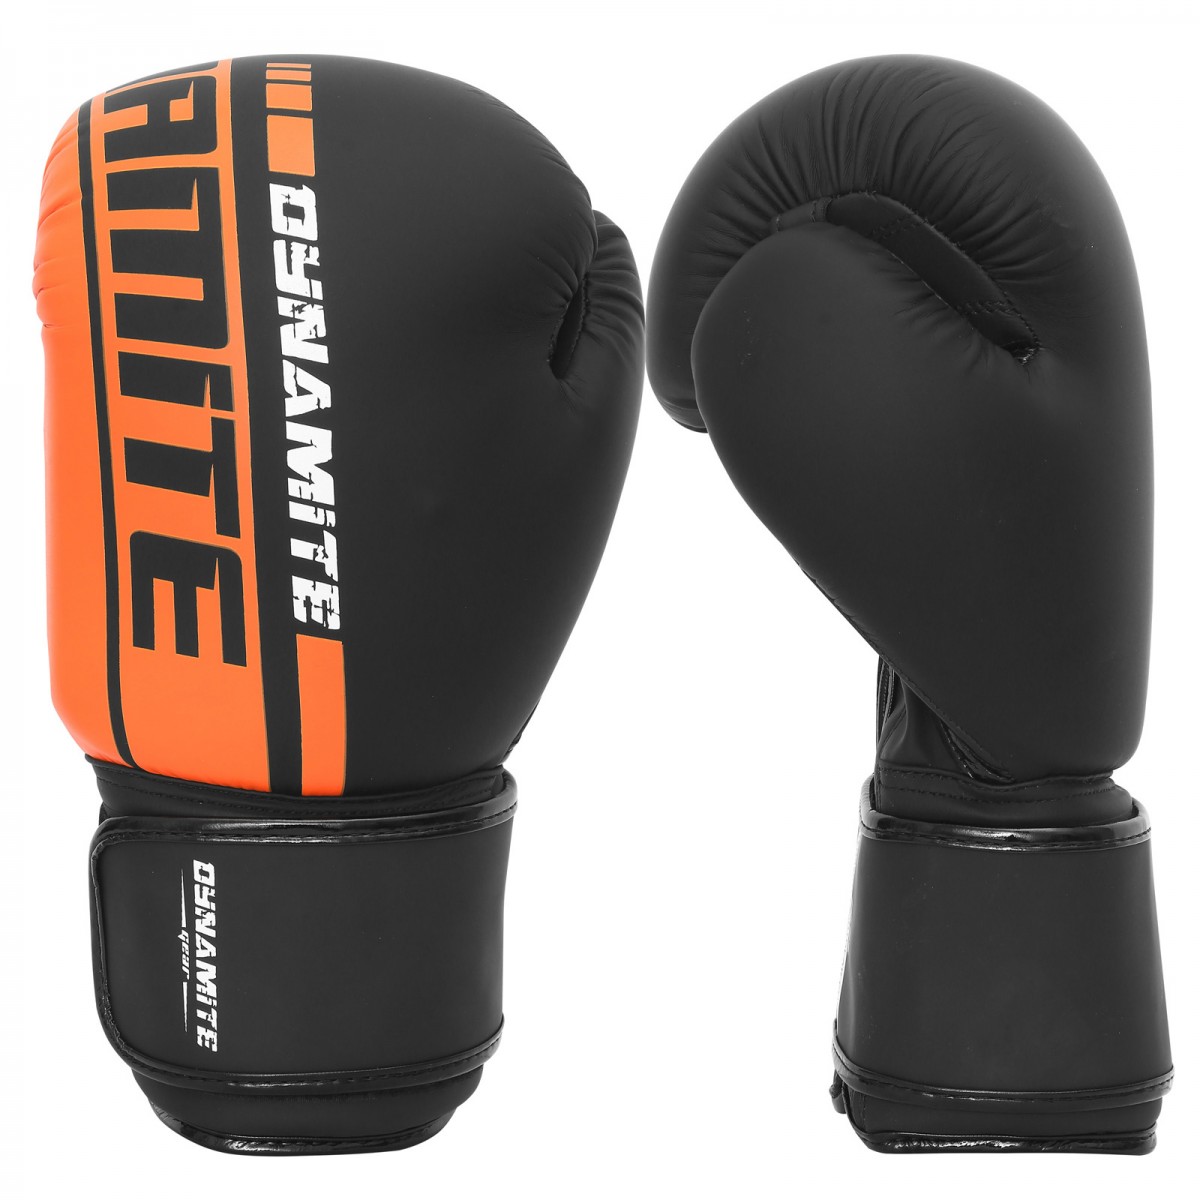 Punching Bag Dynamite Kickboxing Boxing Gloves - Matt Black/Orange 8oz